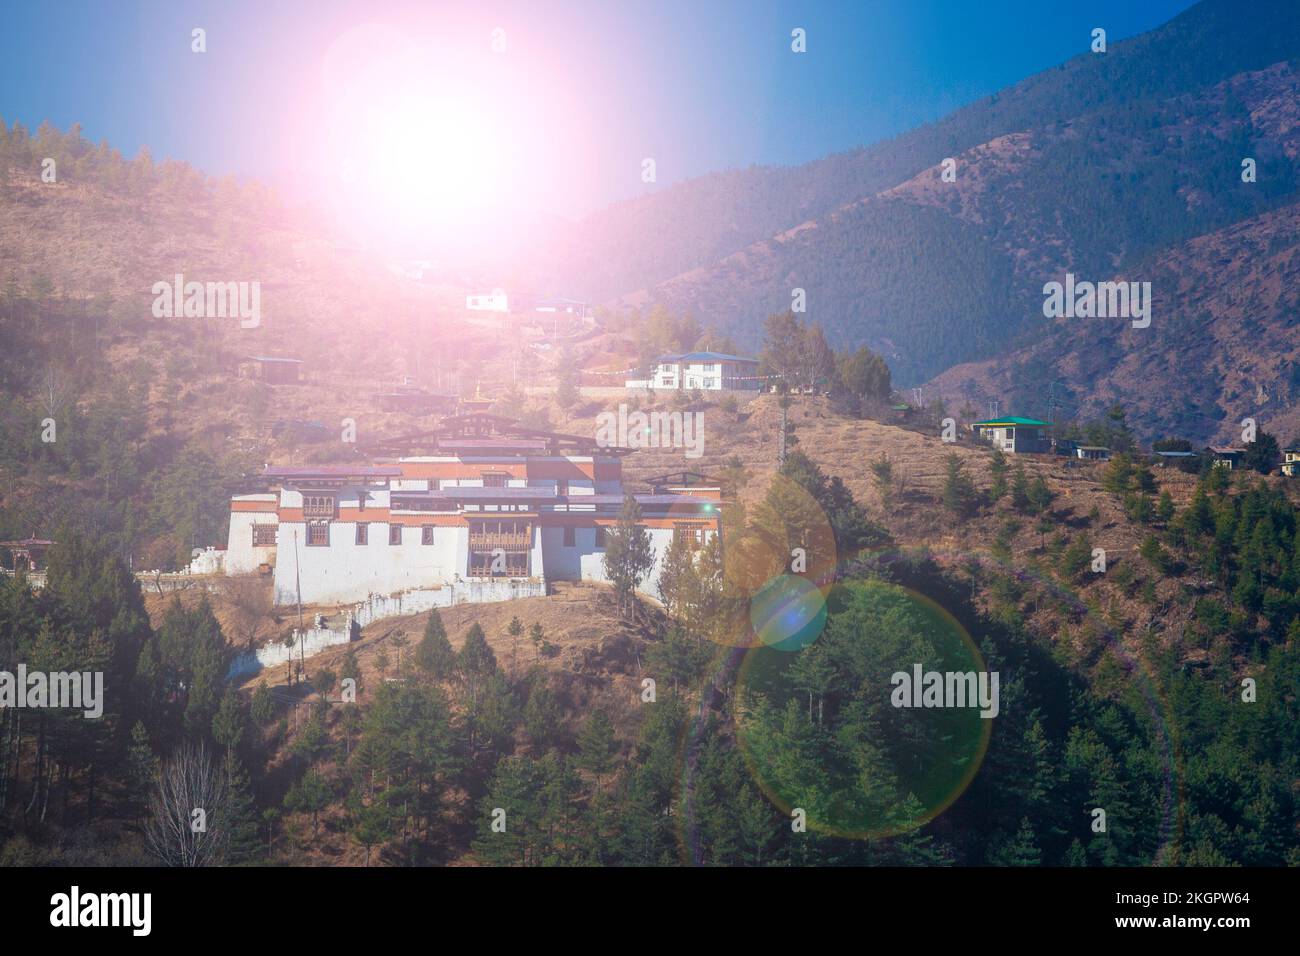 Die alten bhutanischen Tempel befinden sich im wunderschönen Tal inmitten des Himalaya-Berges. Das ist eine wunderbare Touristenattraktion. Die Aussicht ist traumhaft. Stockfoto